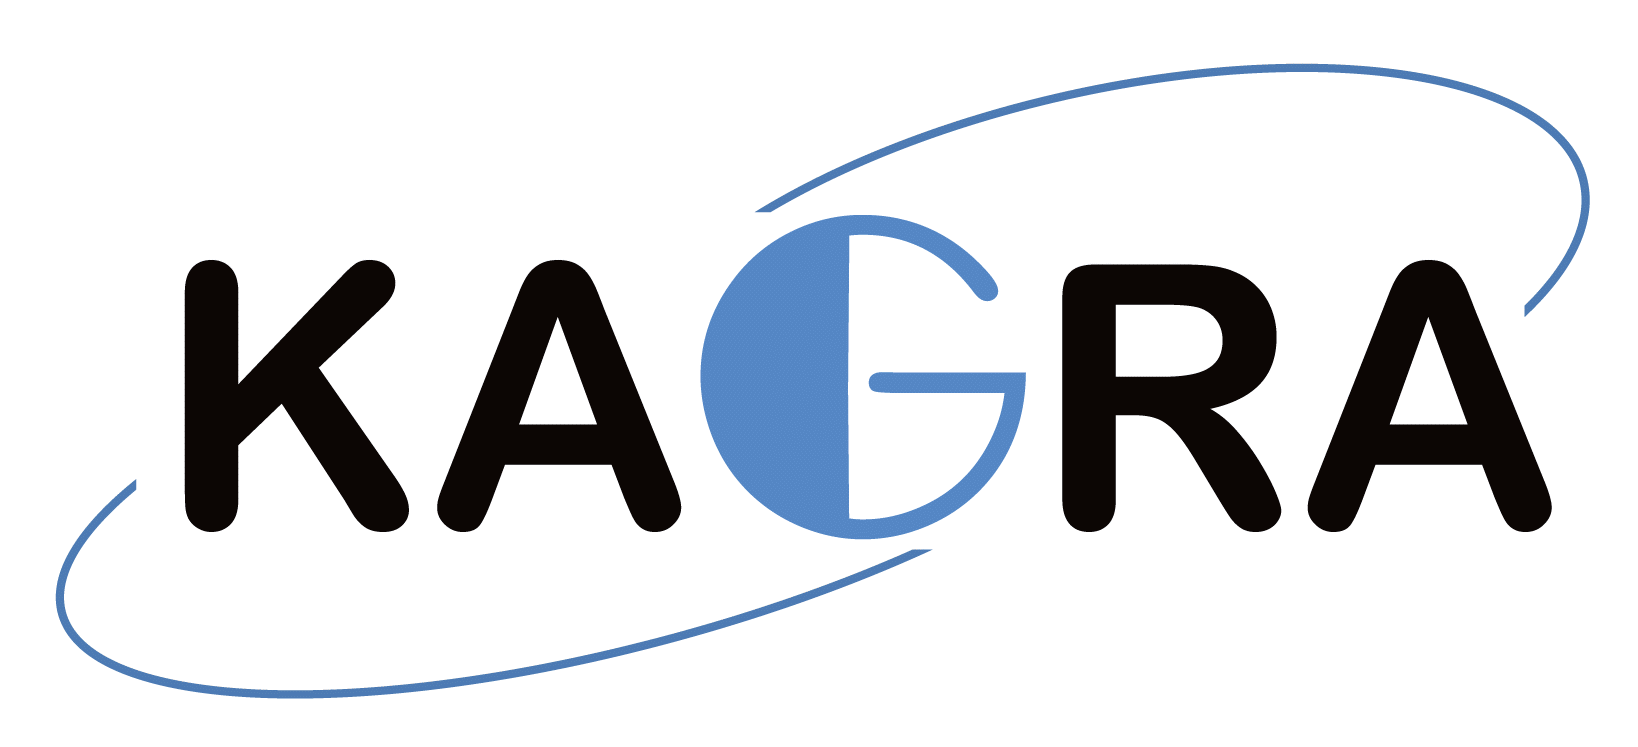 KAGRA-logo.gif